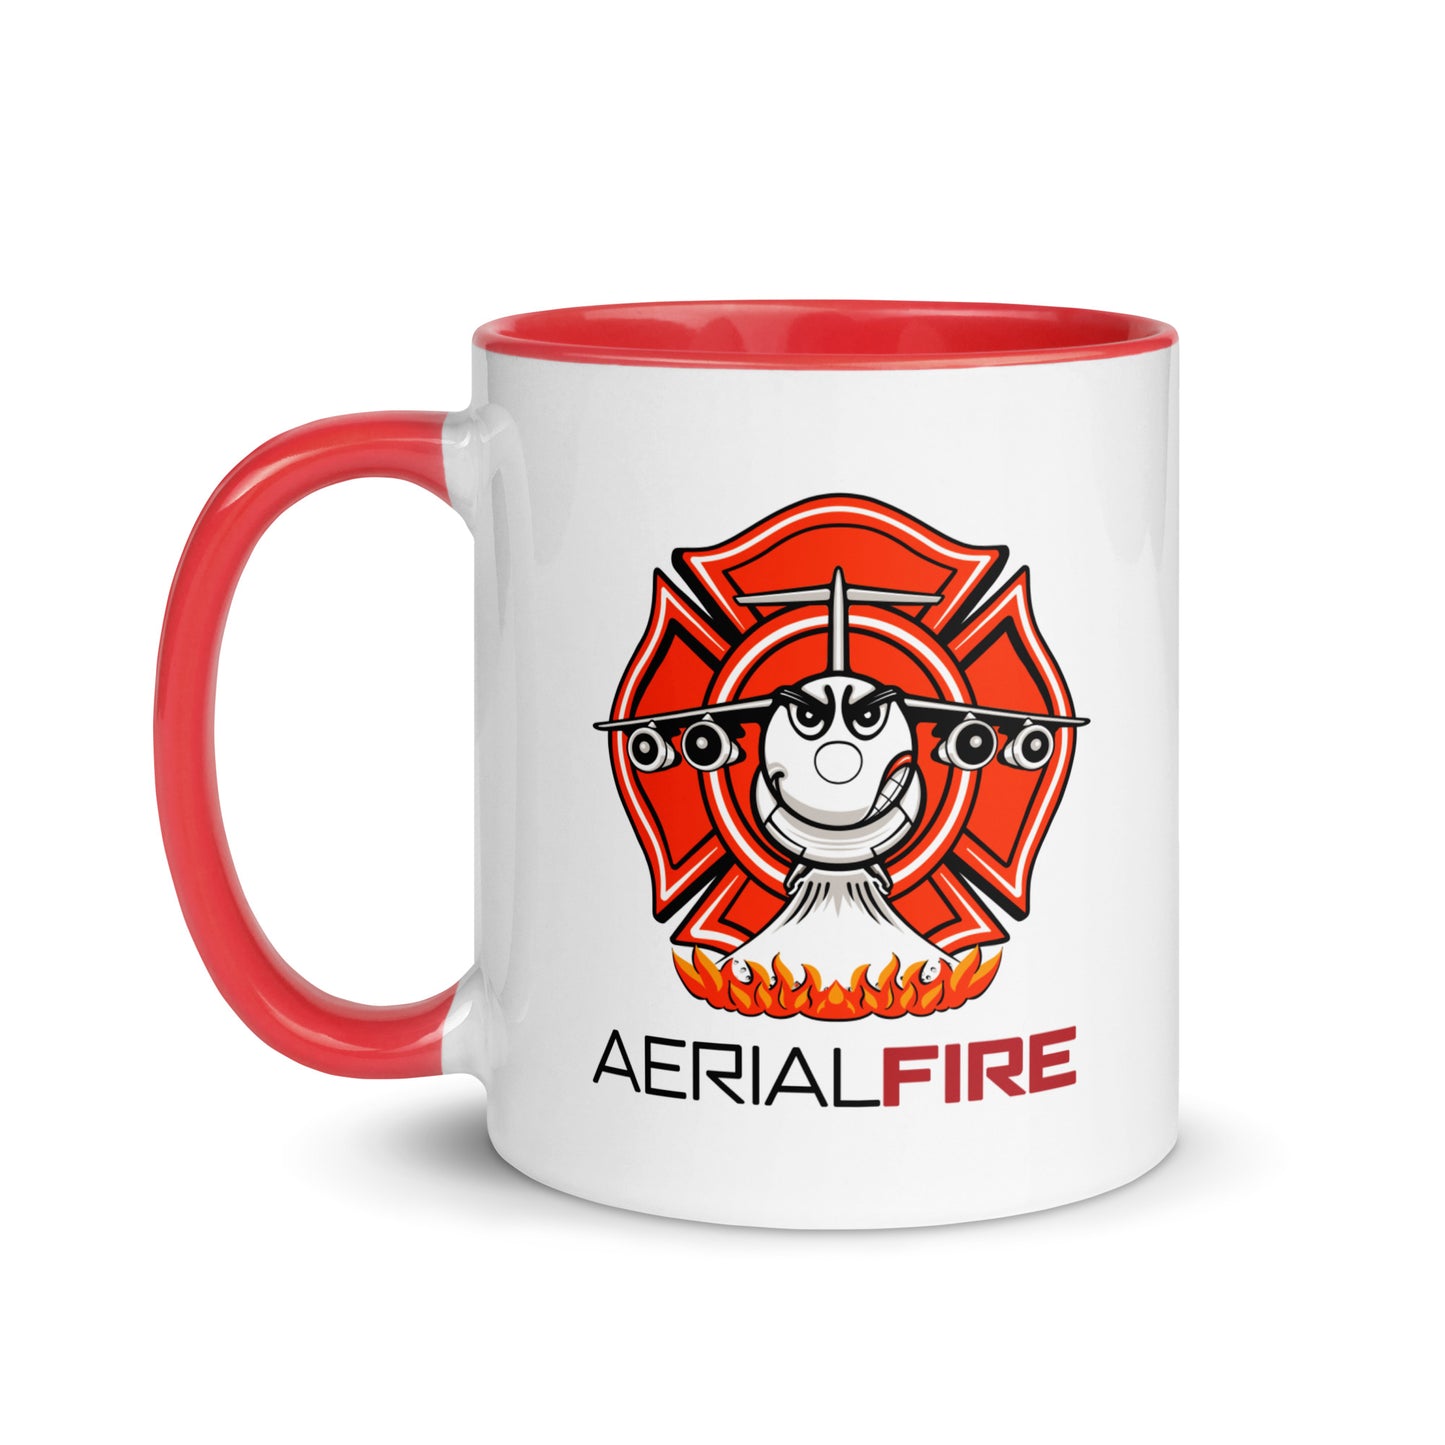 AerialFire BAE146/RJ85 Cartoon Mug with Color Inside